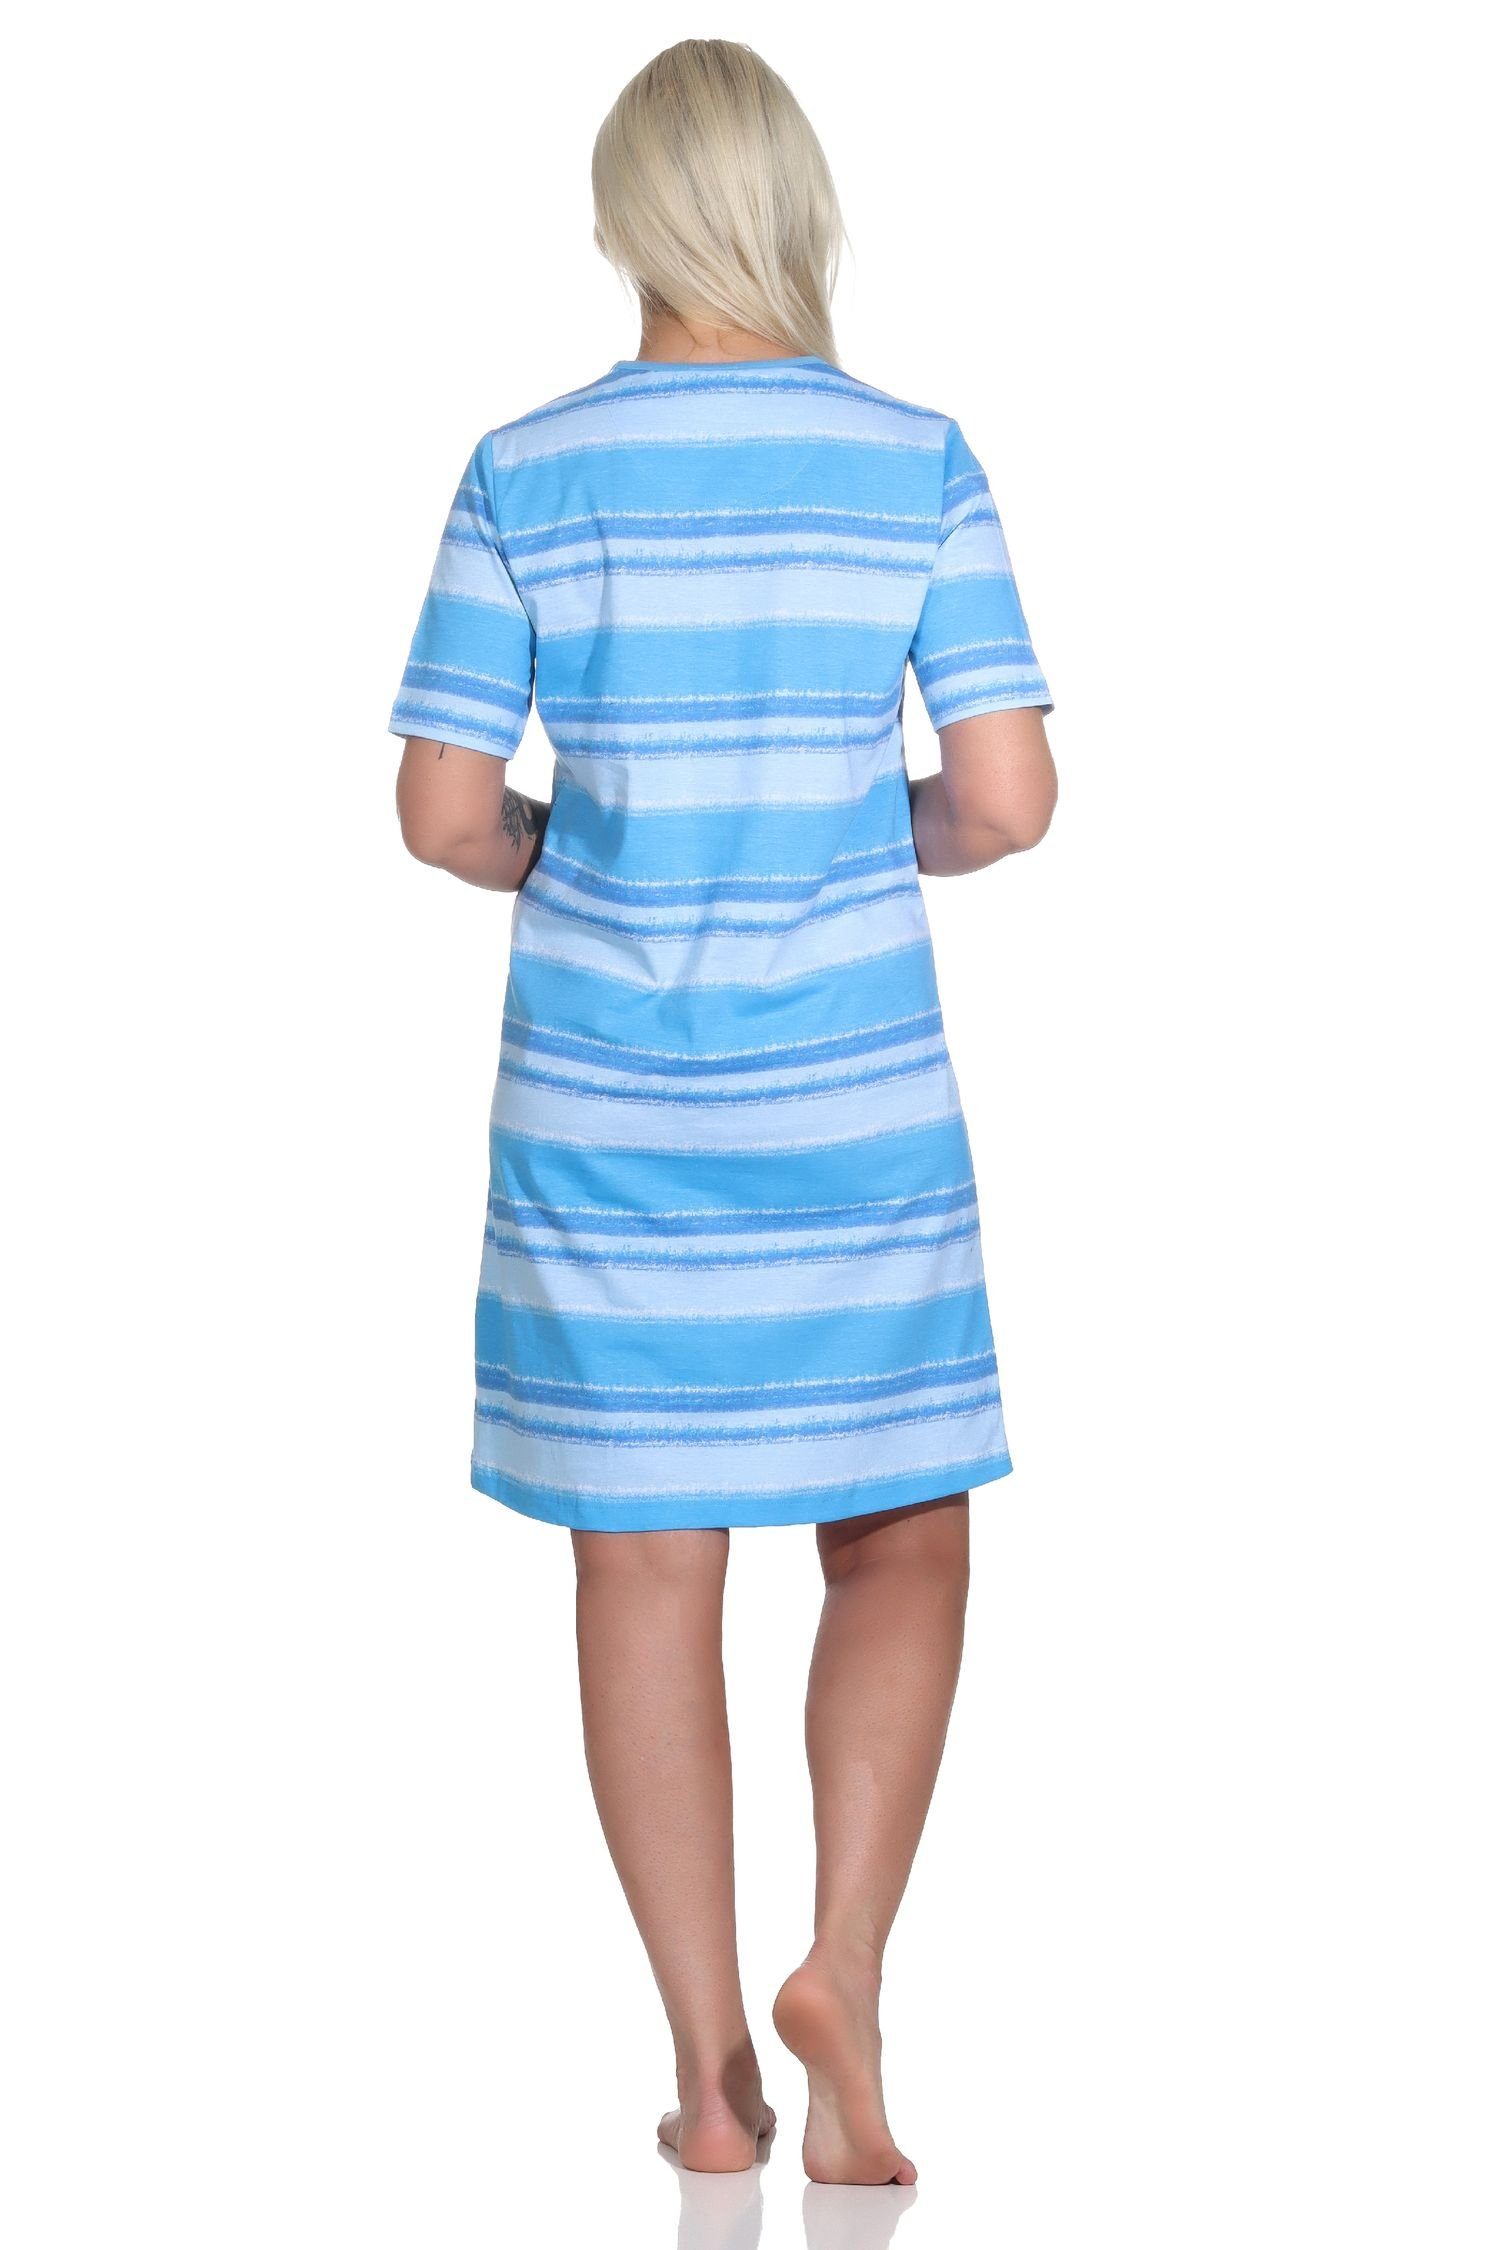 Normann Nachthemd im kurzarm blau Look Damen Streifen Nachthemd farbenfrohen